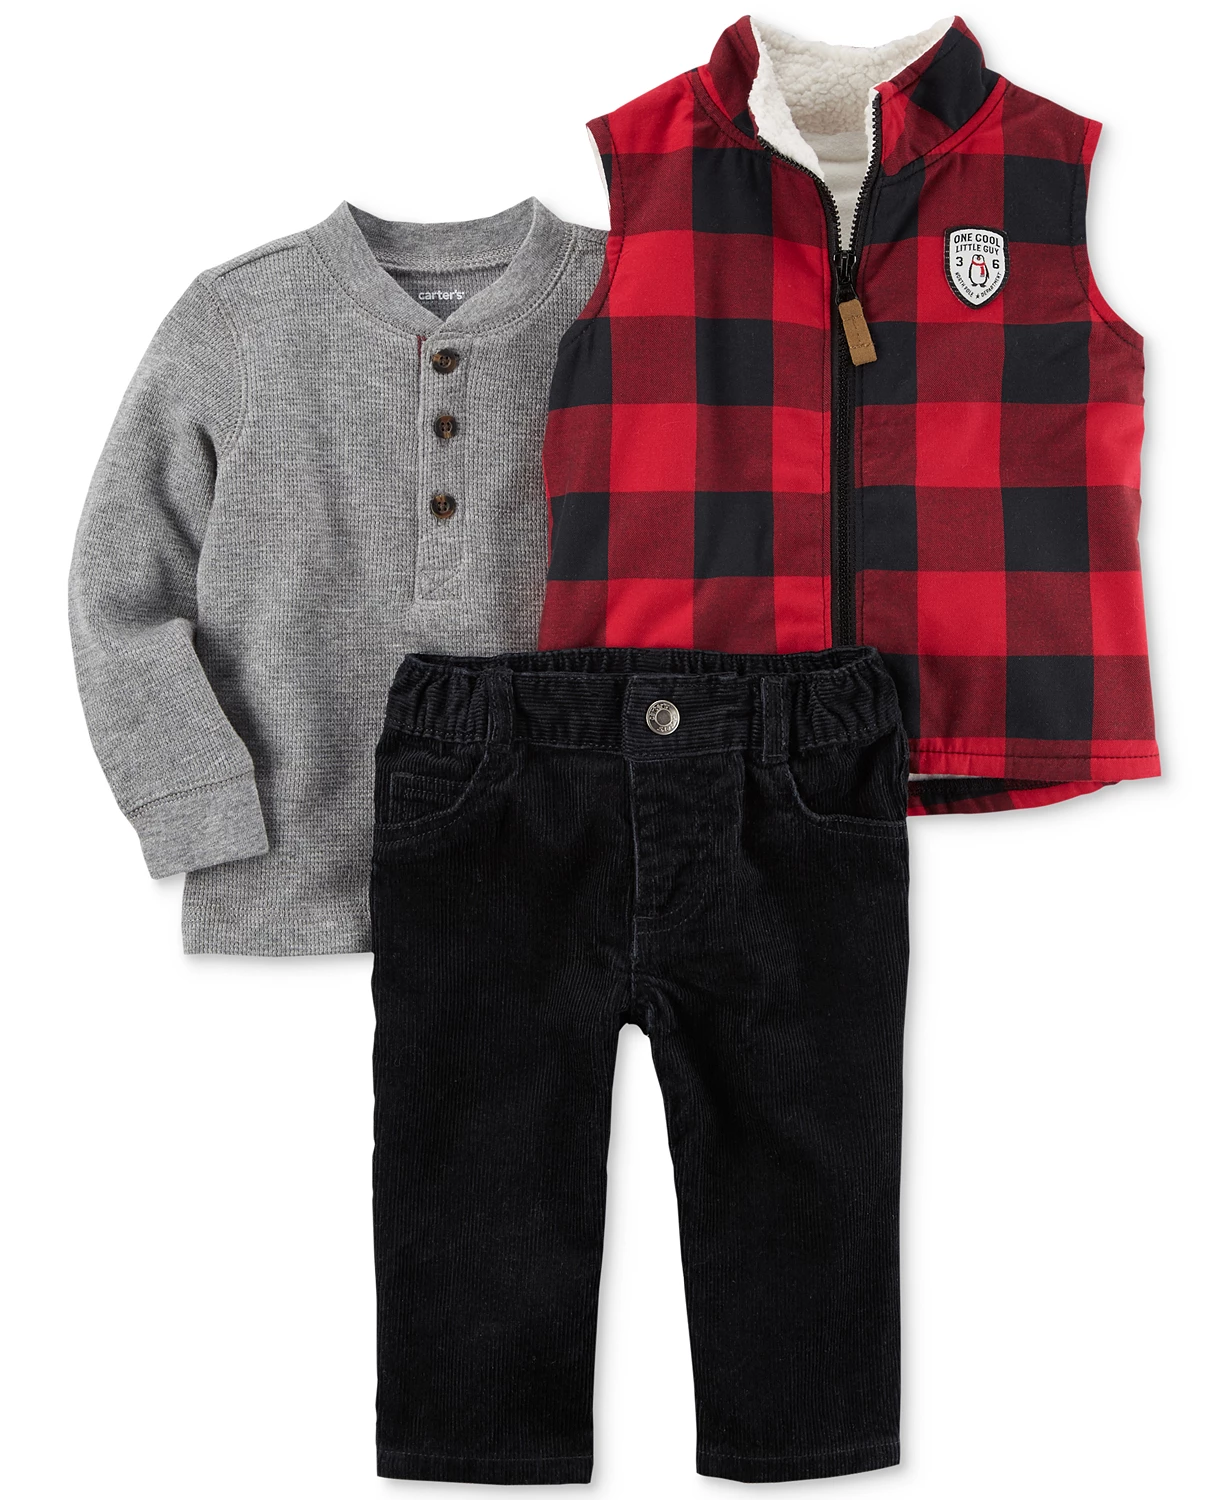 Baby Wholesale Clothing USA